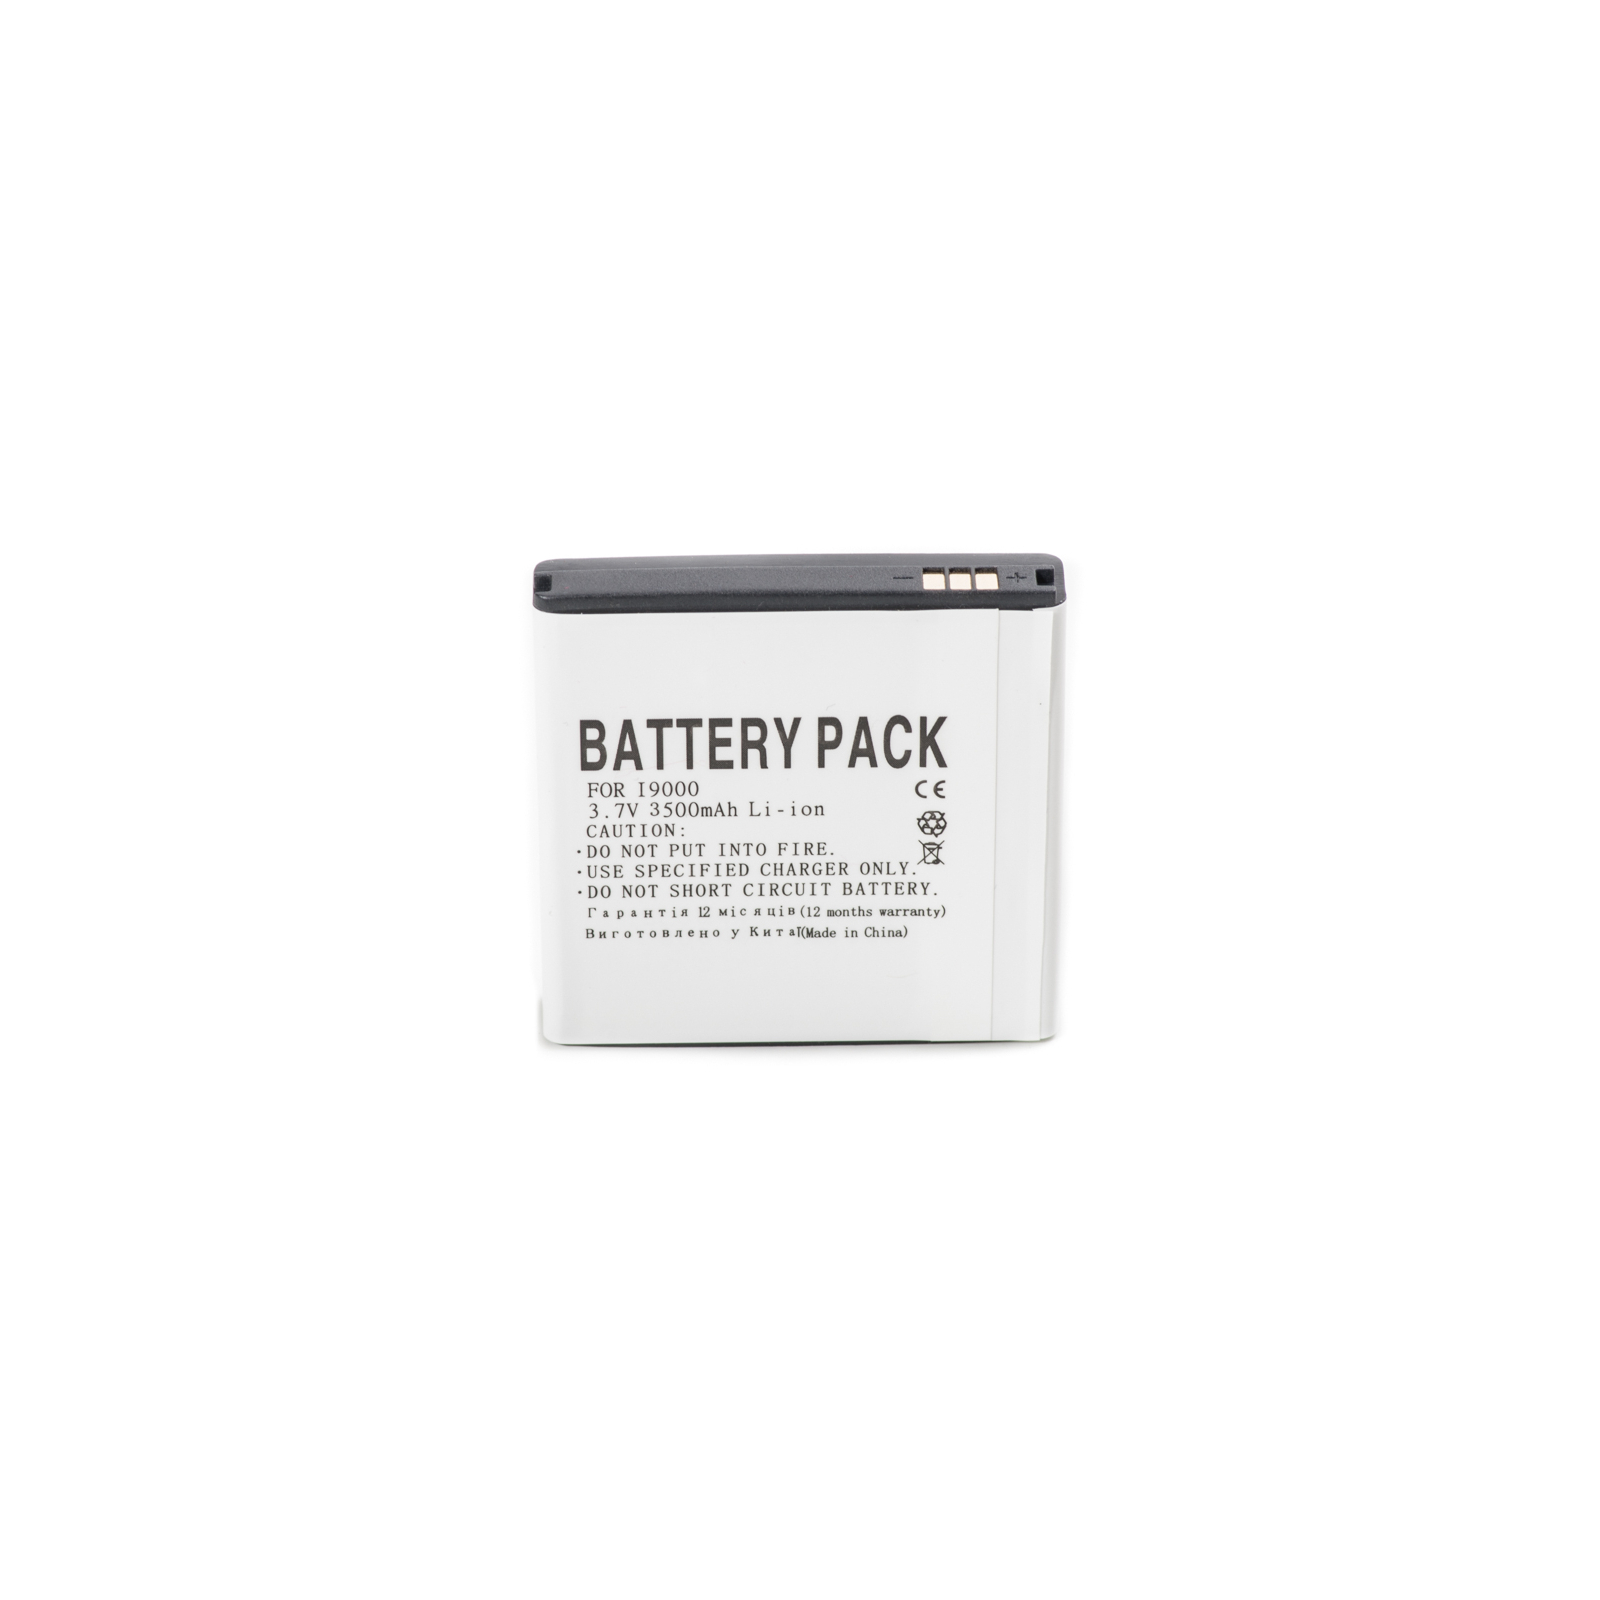 Акумуляторна батарея PowerPlant Samsung i9000 (Galaxy S), EPIC 4G, i897 (DV00DV6073)